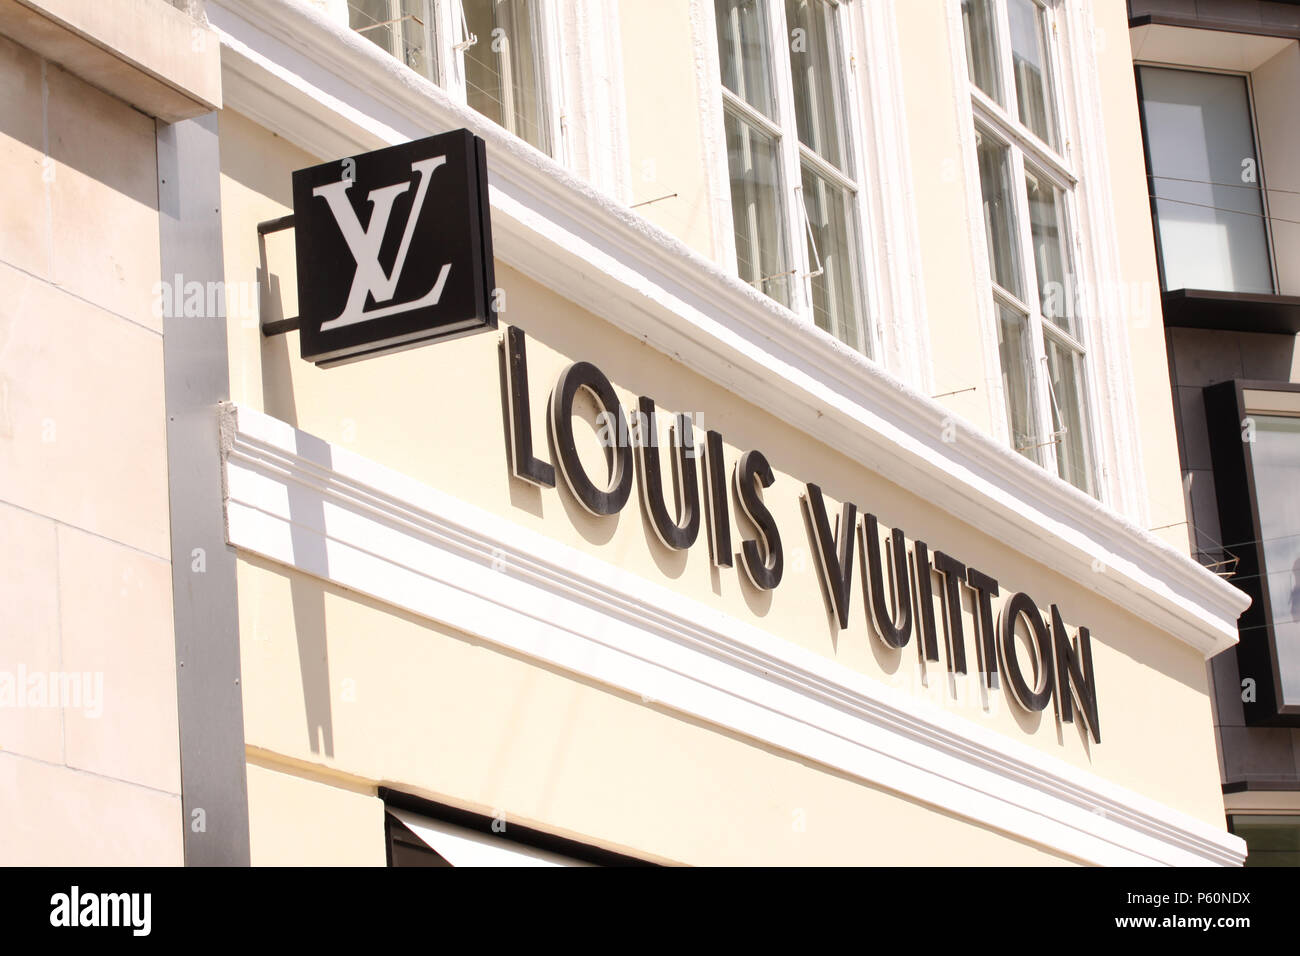 Kopenhagen, Dänemark - 26. Juni 2018: Louis Vuitton Logo Schild auf Shop. Louis Vuitton ist eine berühmte High End Fashion House Hersteller und Luxus r Stockfoto